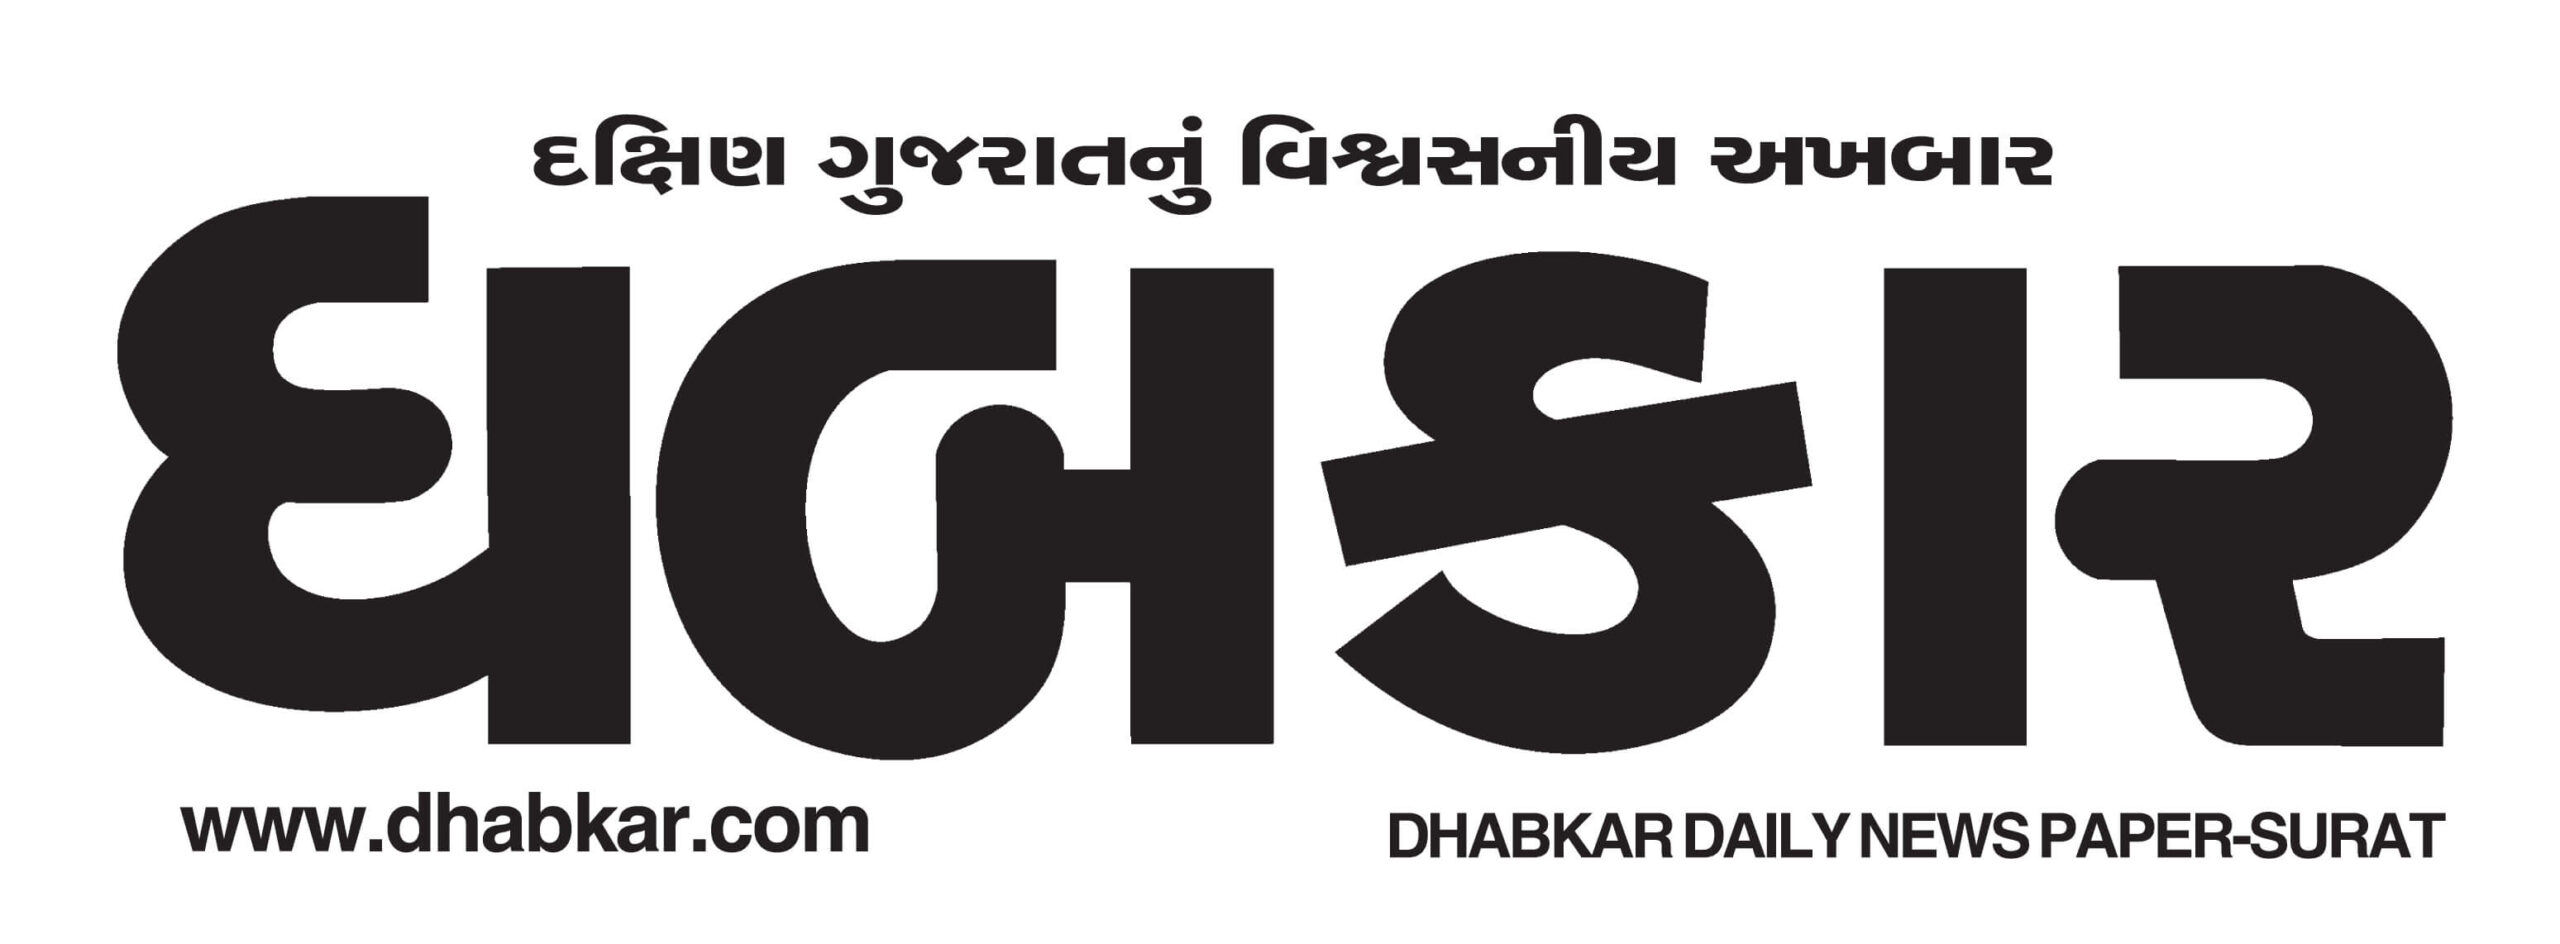 logo dhabkar